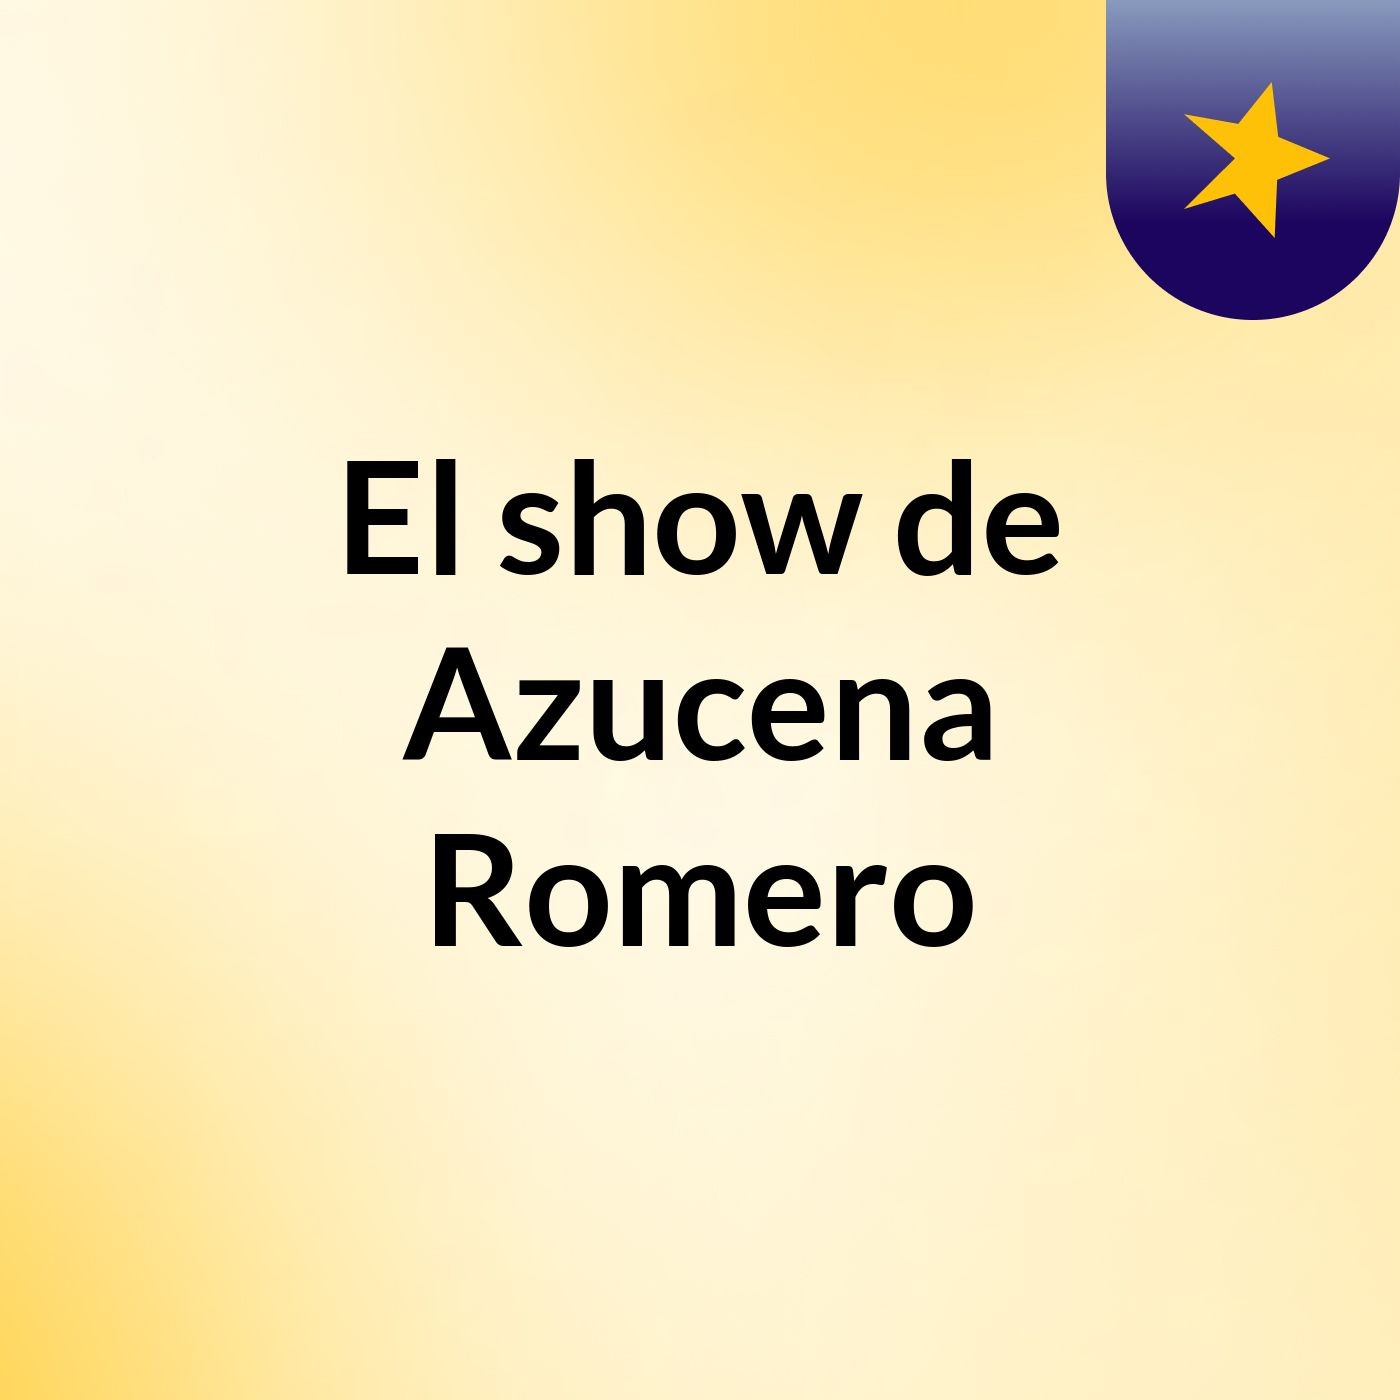 El show de Azucena Romero